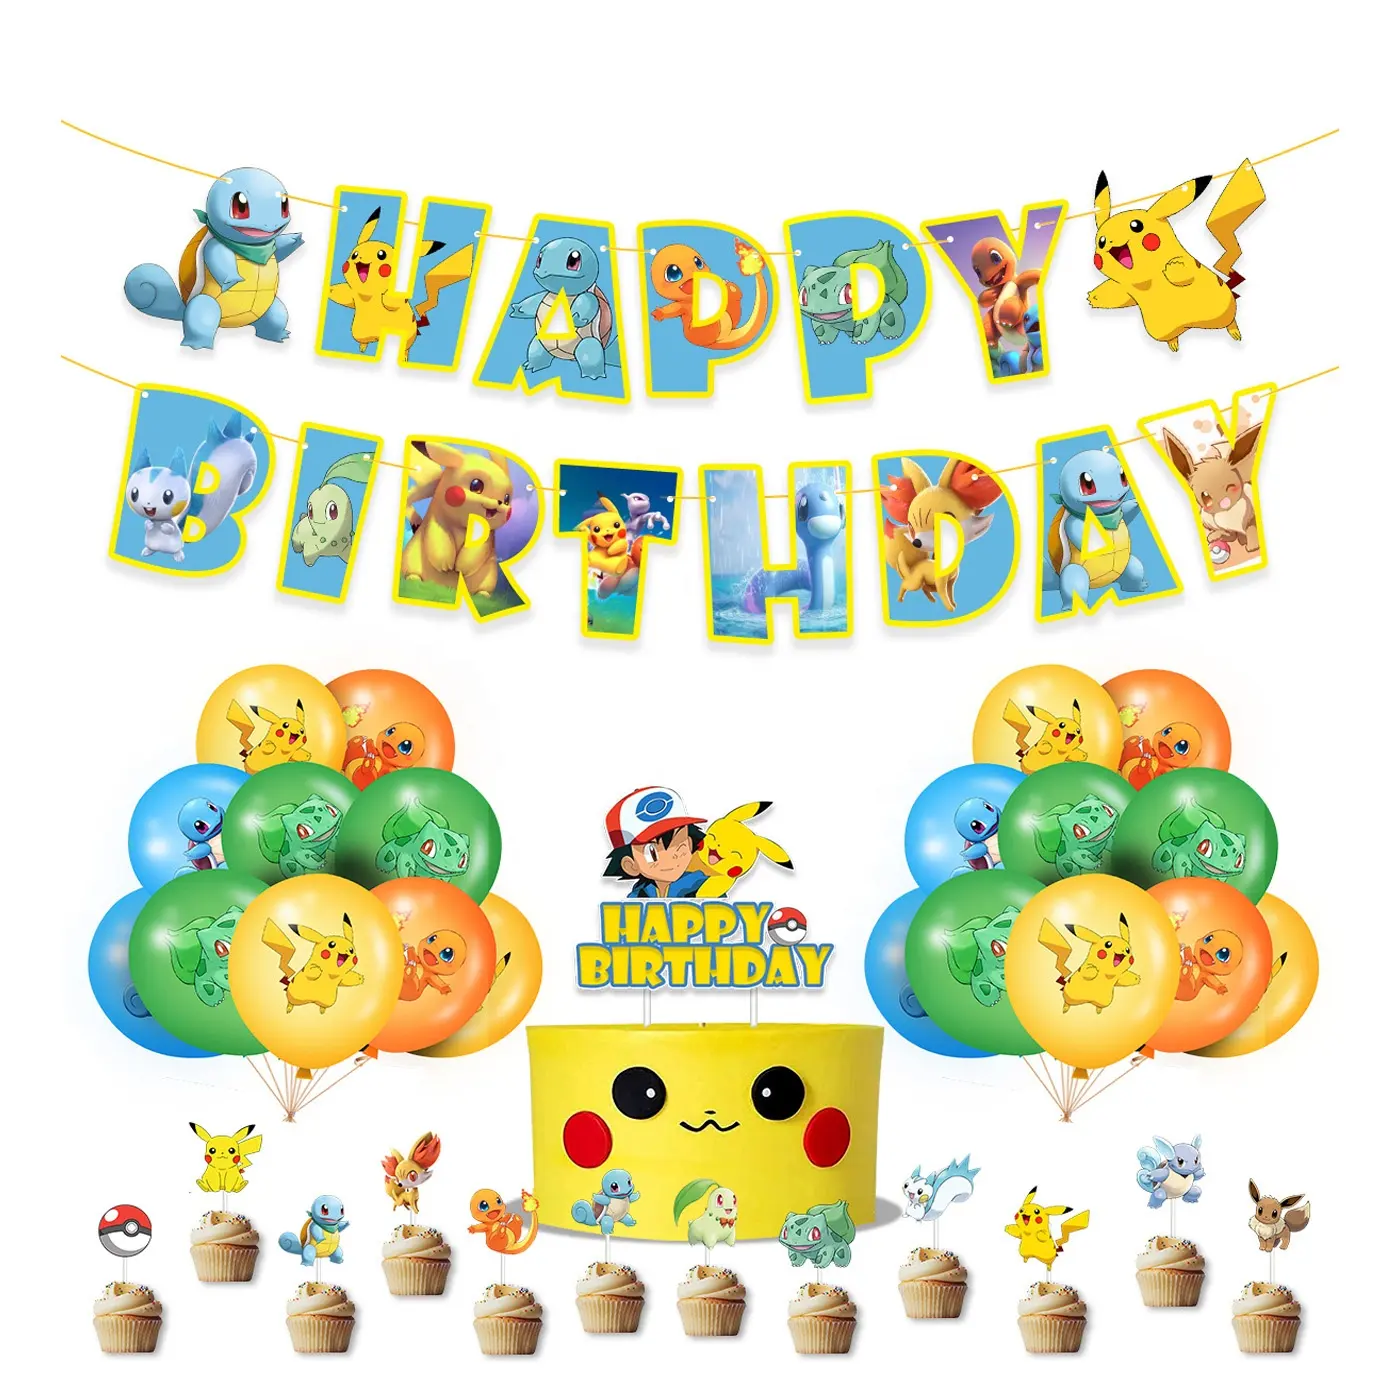 Superstar Kids Birthday Supplies Cartoon Theme Party Balloon Set Happy Birthday Banner Party Decoration Supplies